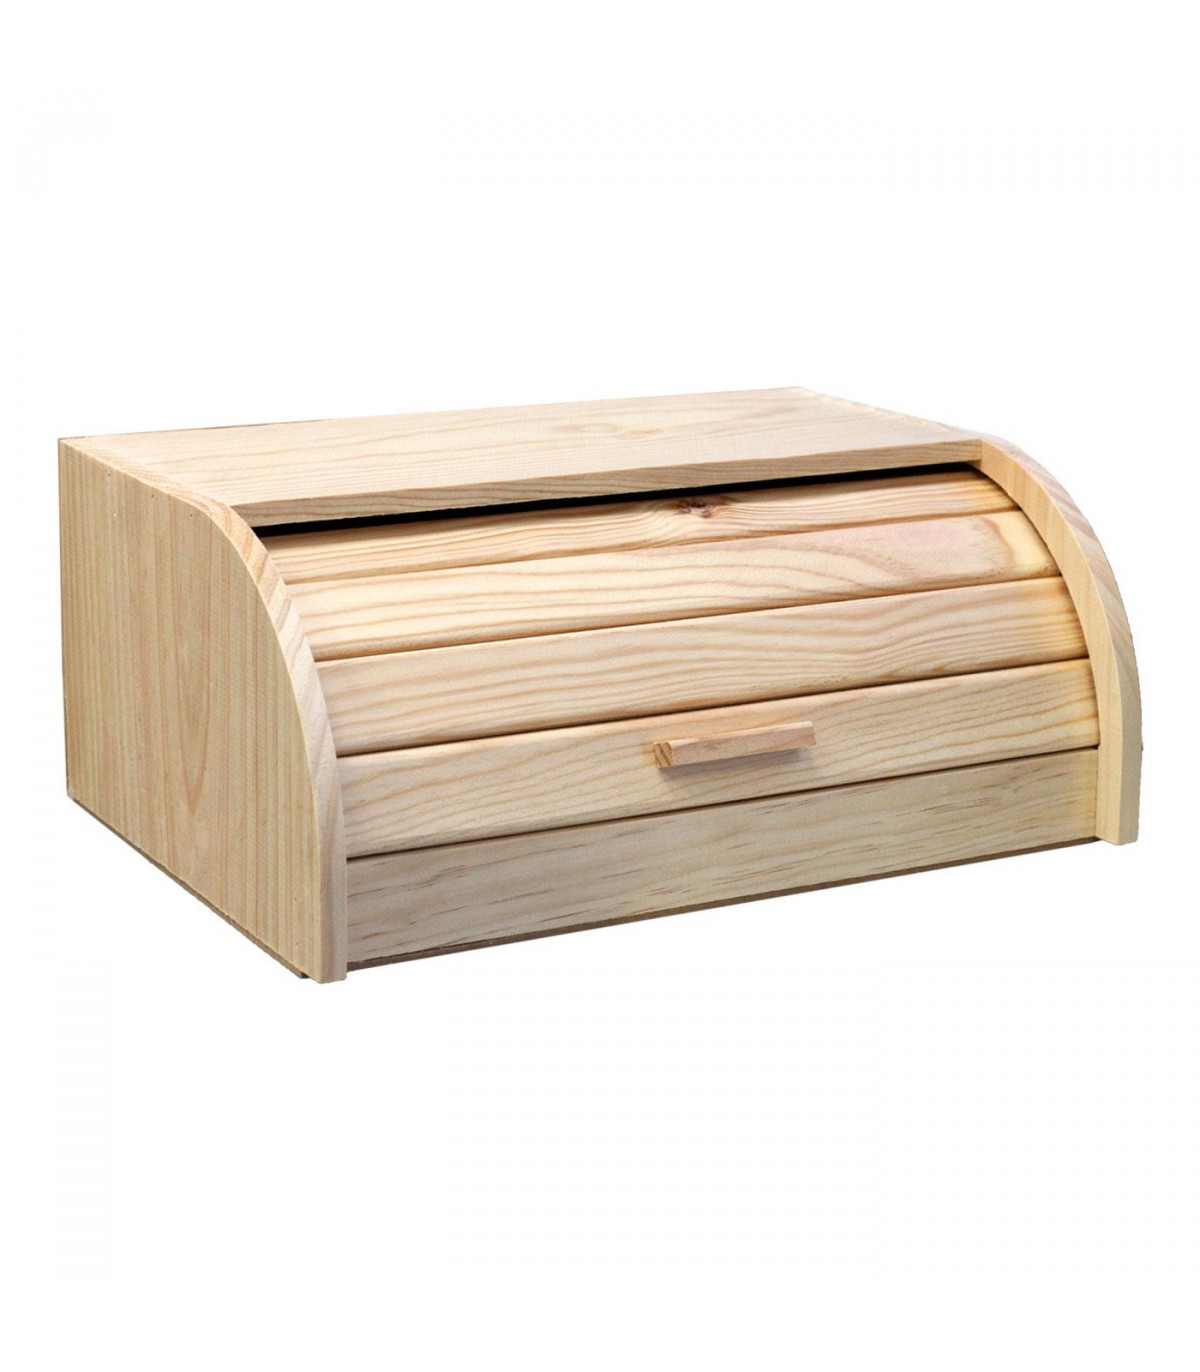 Artema - Panera de madera con tapa de persiana, de 15,5 x 48,1 x 25,8 cm.  Recipiente para almacenar pan con tapa, válido para ho